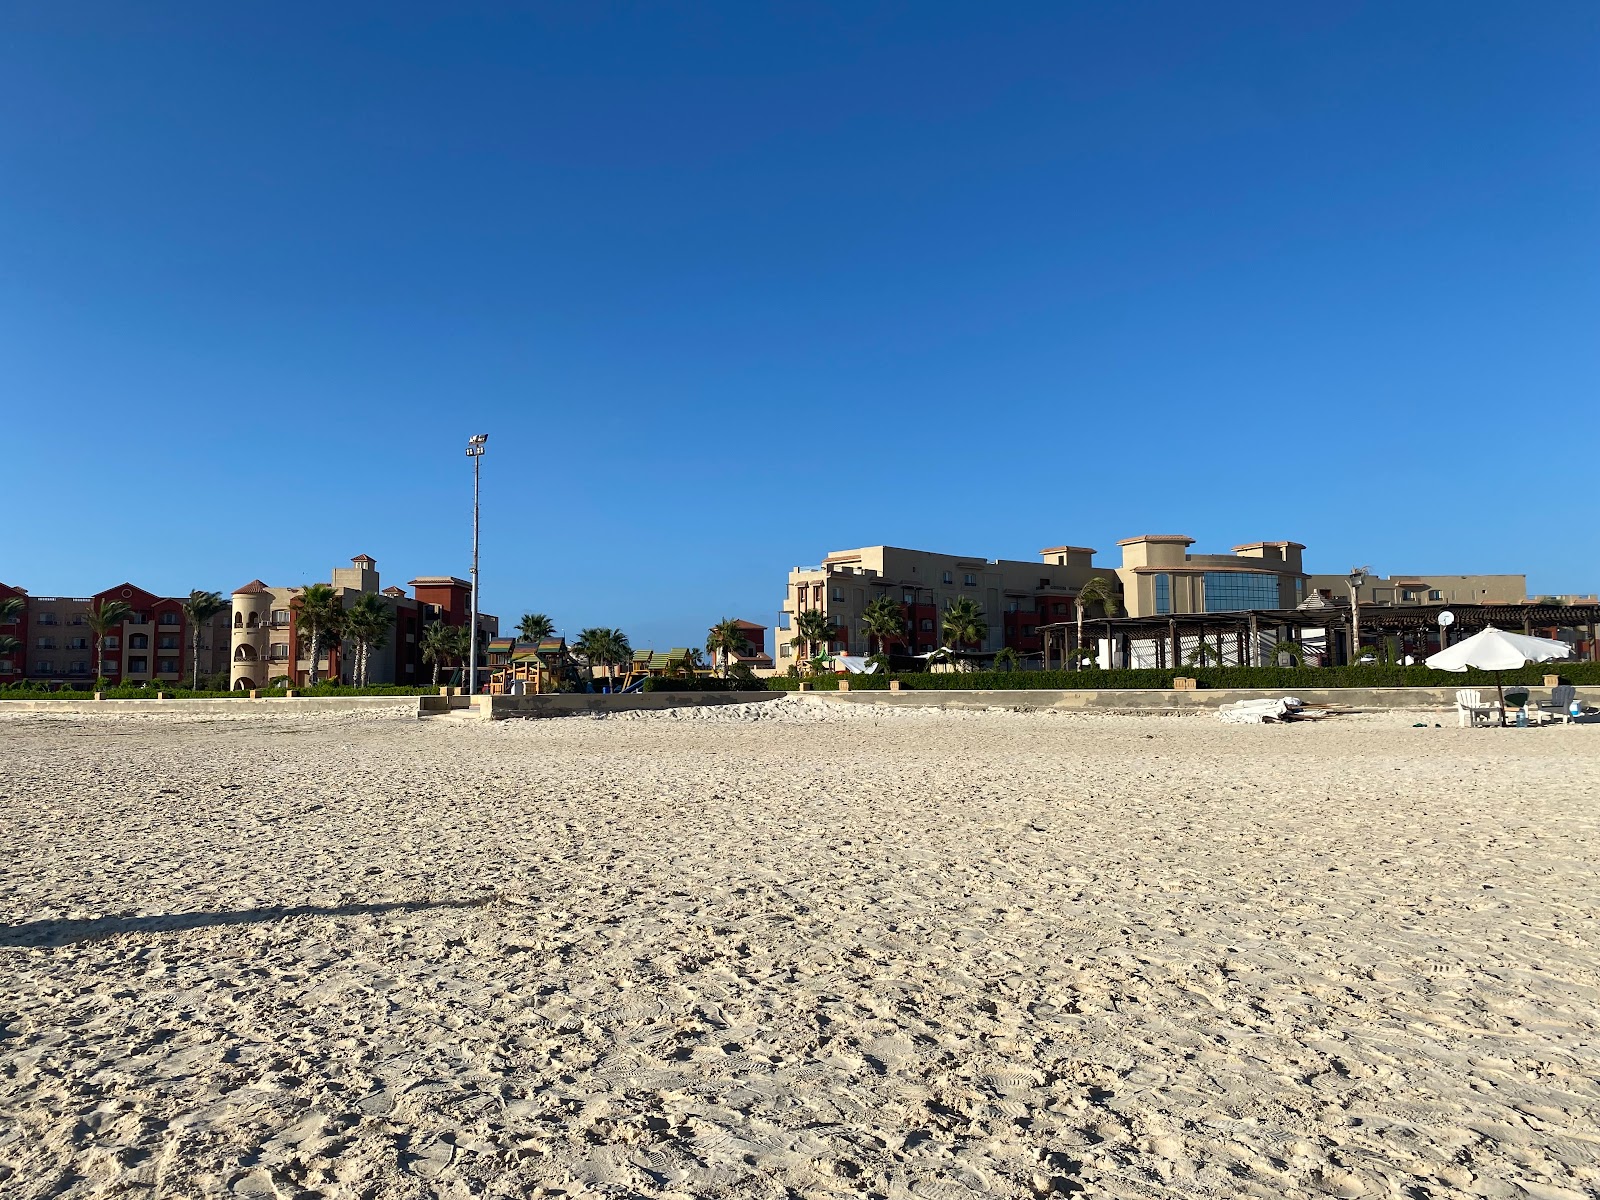 Foto de Eagles Resort in Cleopatra Beach - lugar popular entre los conocedores del relax